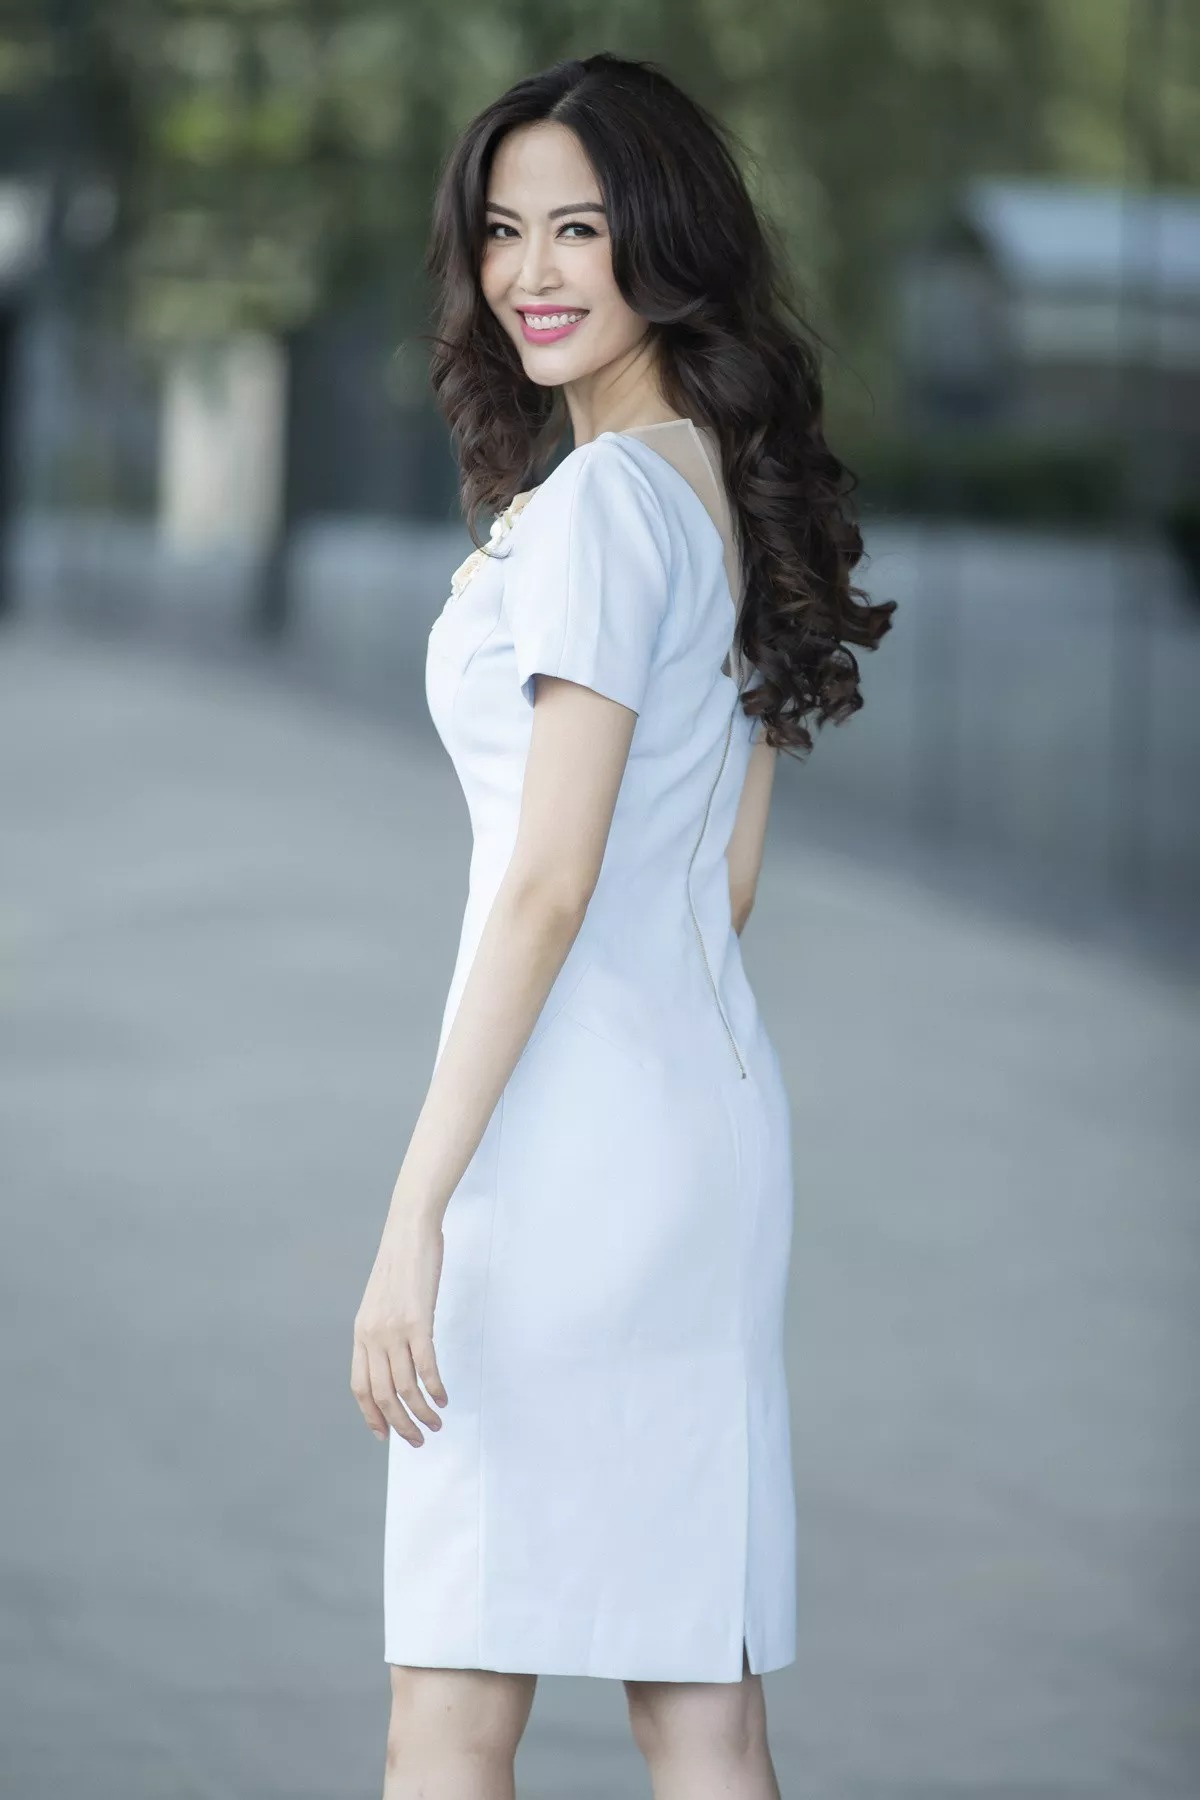 Hoa hậu Thu Thủy từng tham gia show truyền hình về chạy bộ trước khi qua đời - Ảnh 6